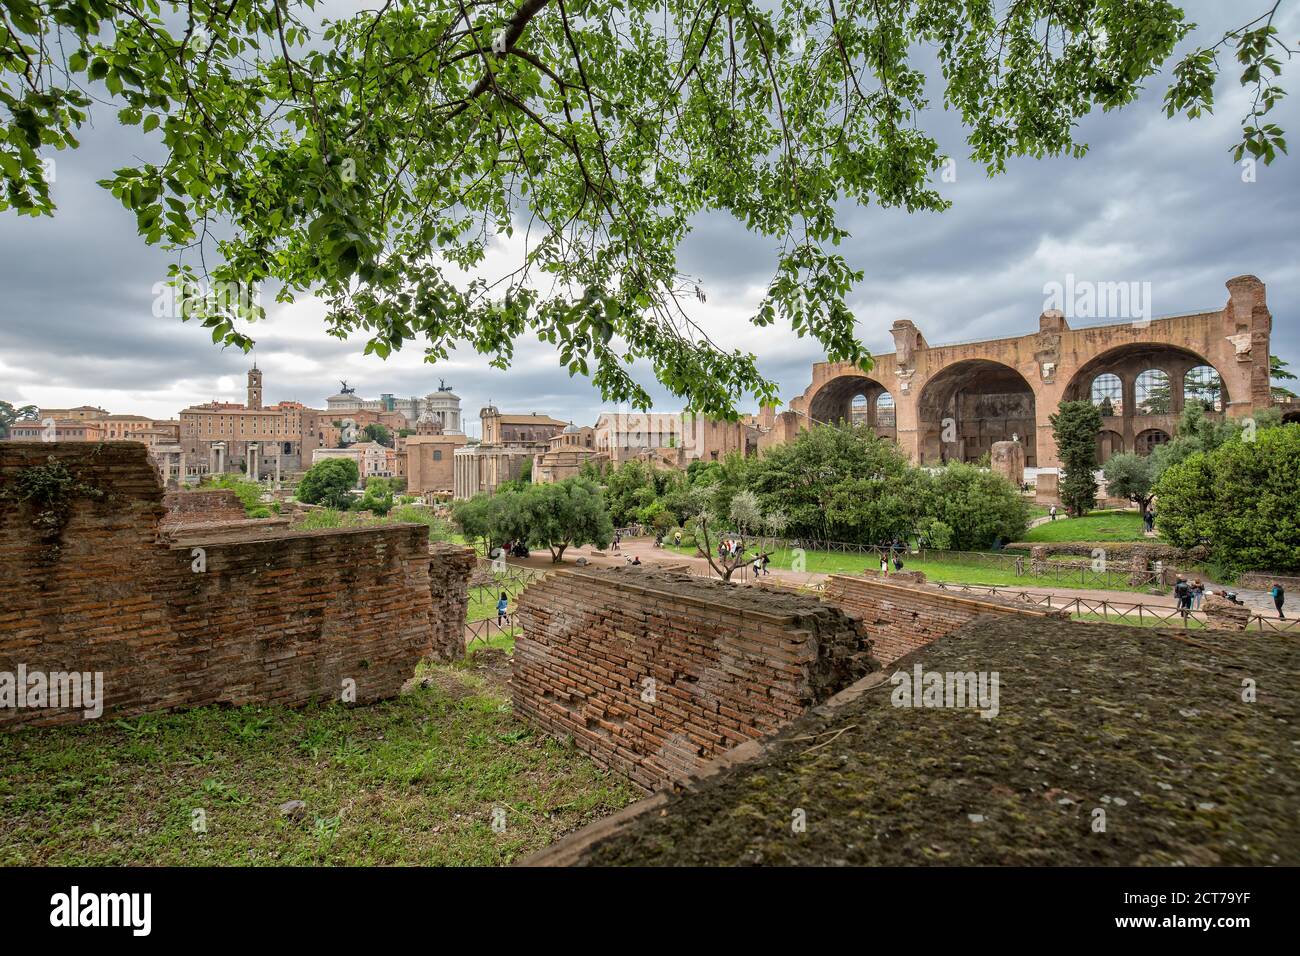 Blick auf die antiken römischen Ruinen im Forum Romanum. Touristen besuchen die antiken Ruinen des Forum Romanum im historischen Zentrum von Rom, Italien Stockfoto